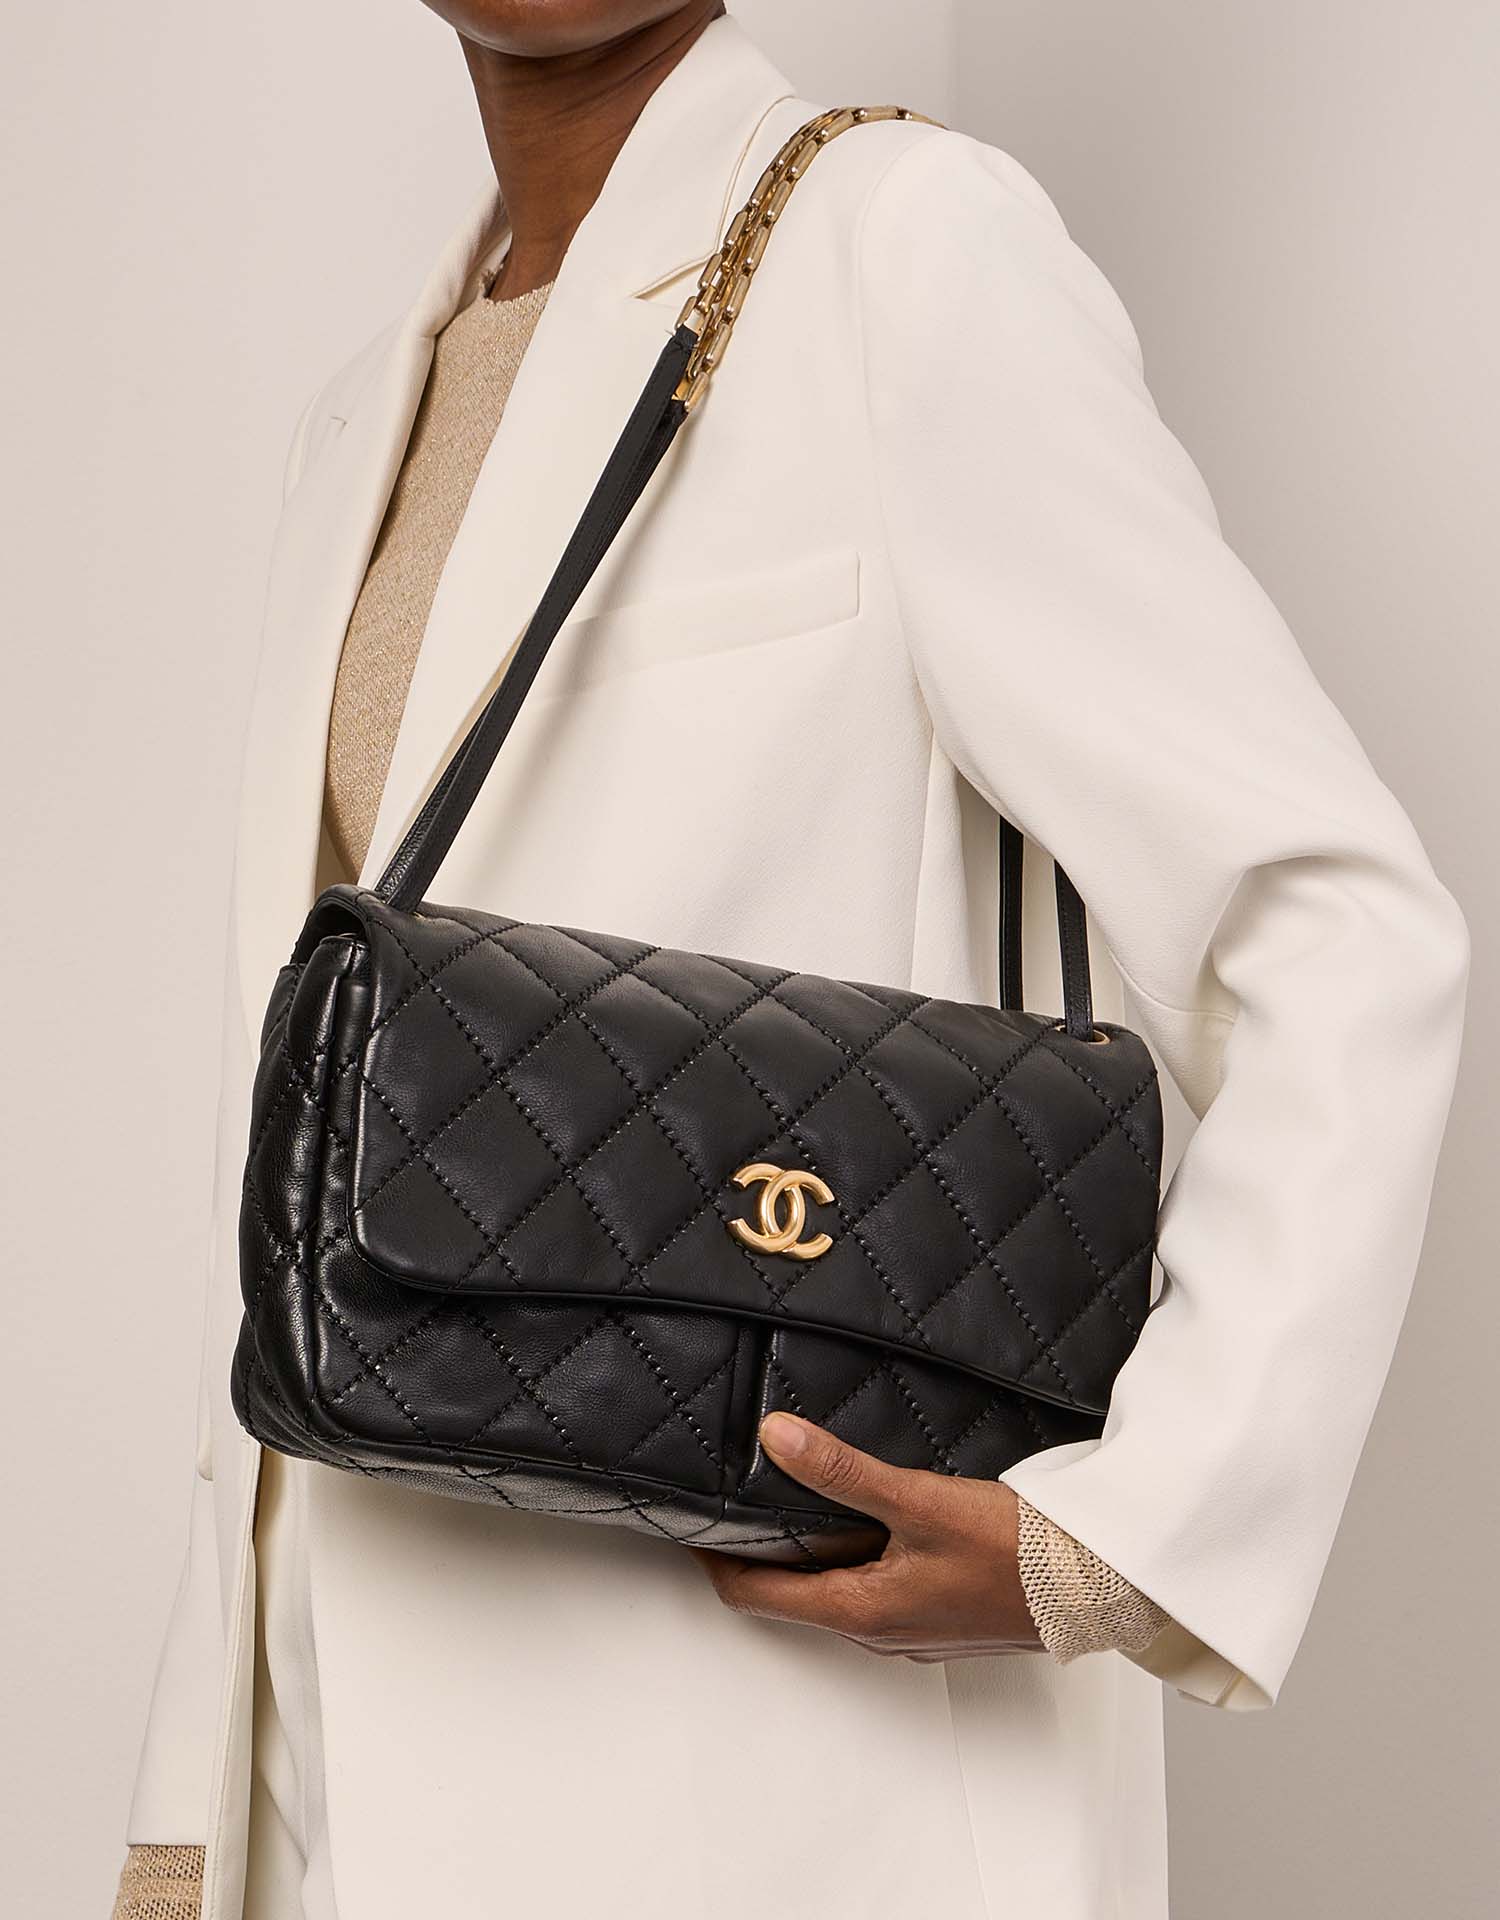 Pre-owned Chanel Tasche Timeless Jumbo Kalbsleder Schwarz Schwarzes Modell | Verkaufen Sie Ihre Designer-Tasche auf Saclab.com